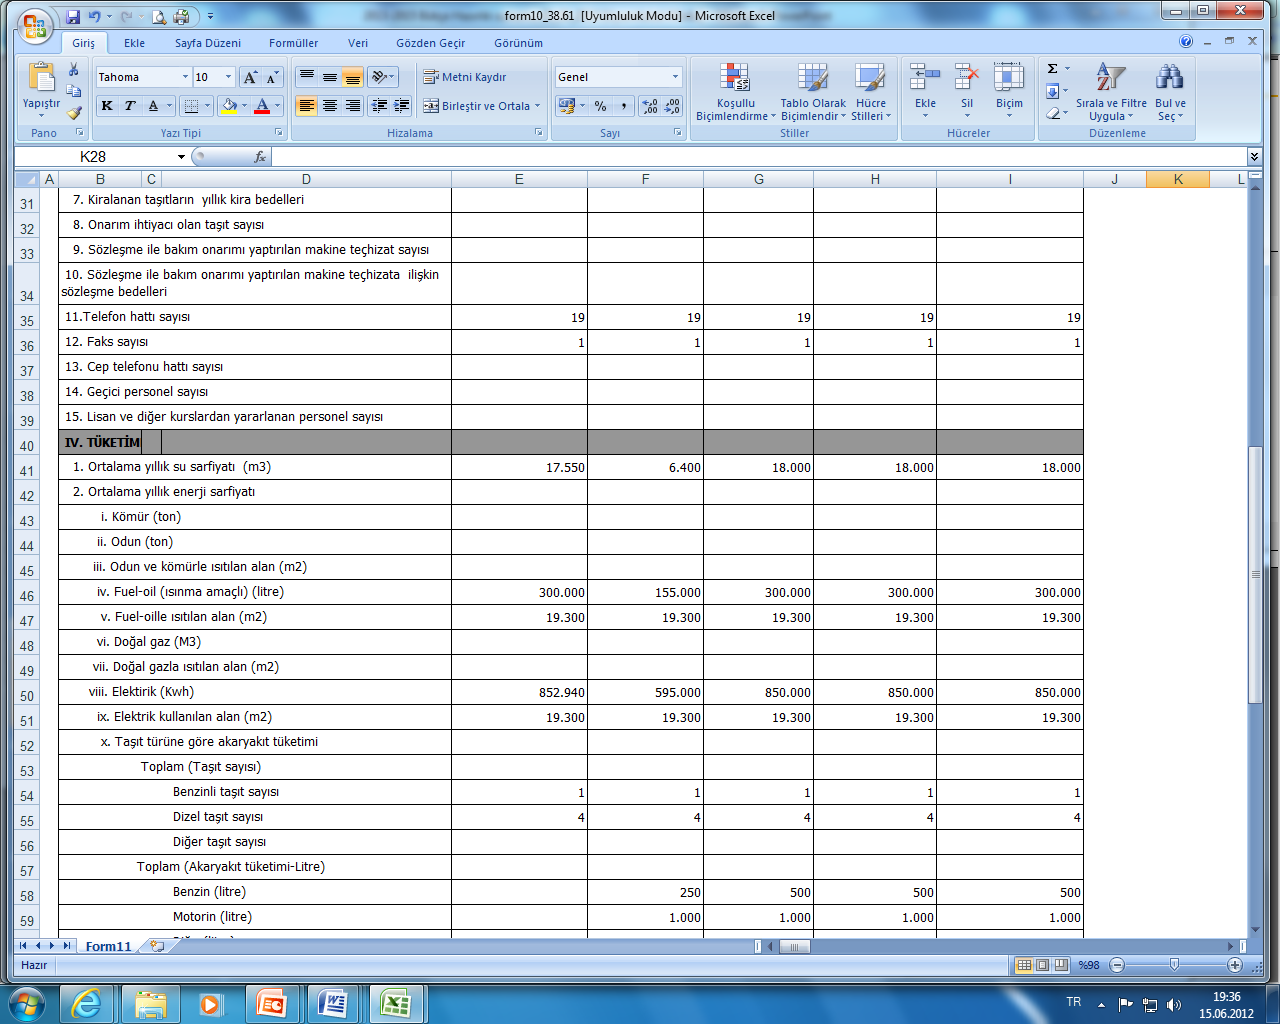 Bütçe Hazırlık Formları (Form-10